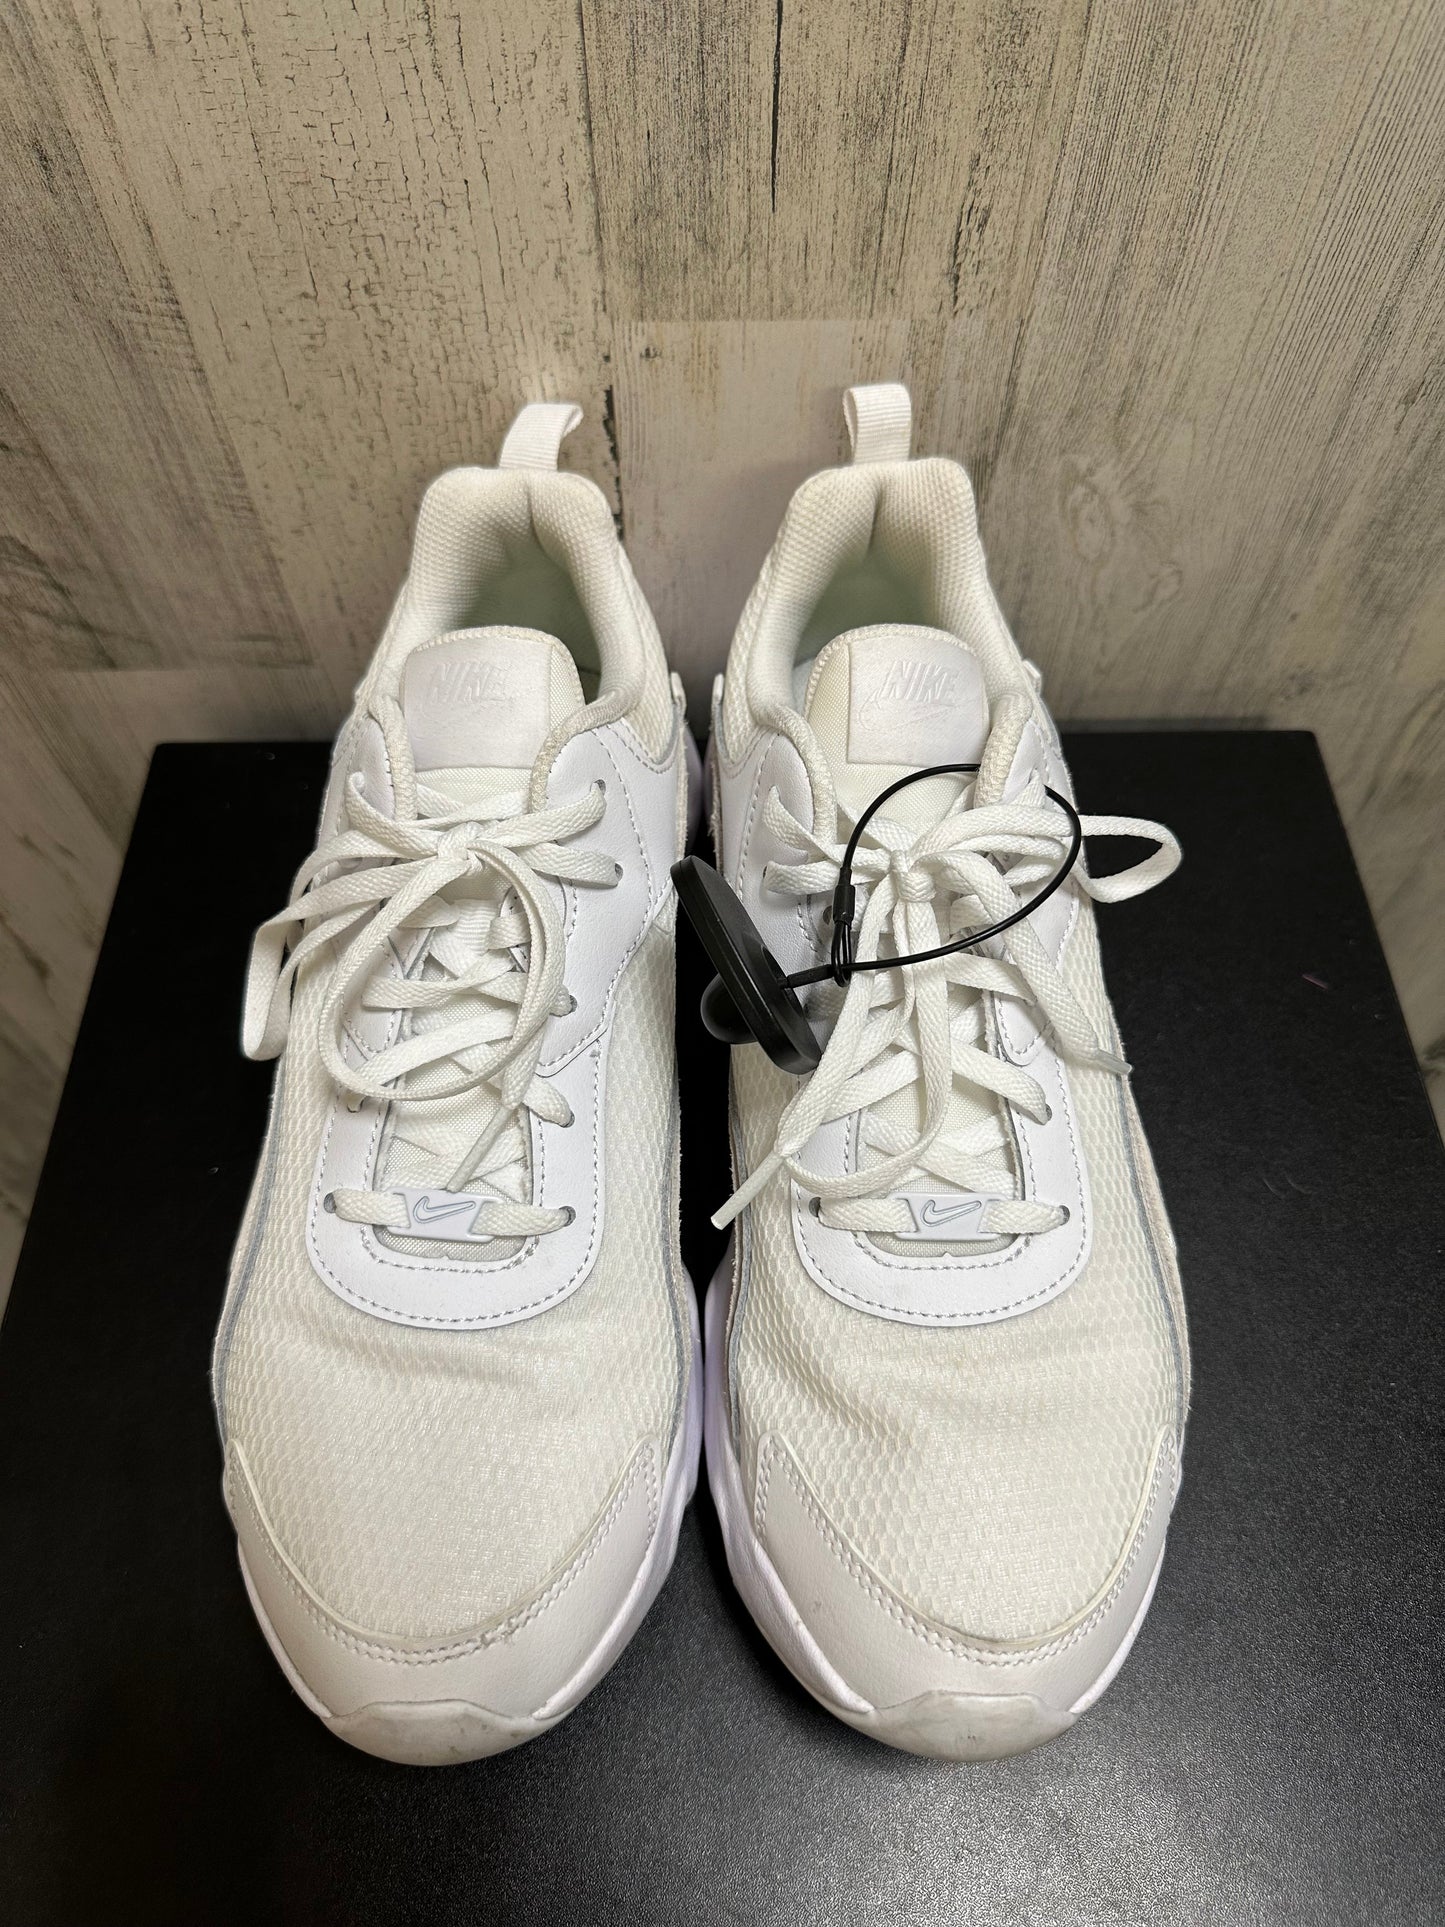 White Shoes Athletic Nike, Size 11.5